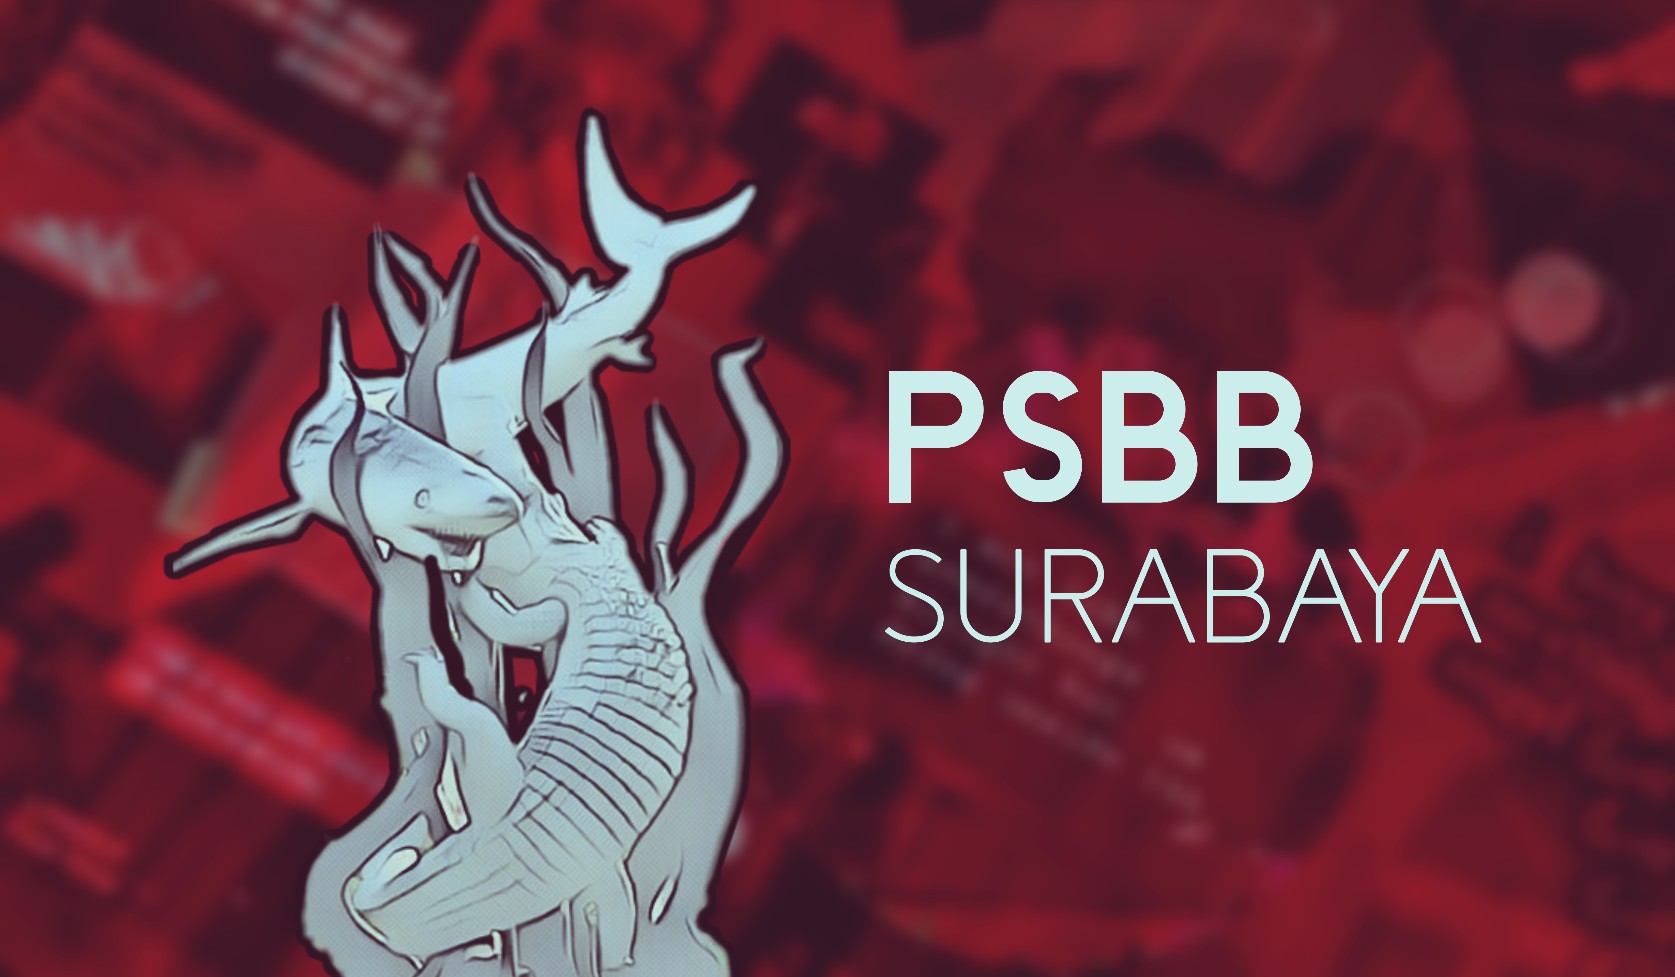 Yang Boleh dan Dilarang saat PSBB Surabaya. (Ilustrasi: Dok/Ngopibareng.id)